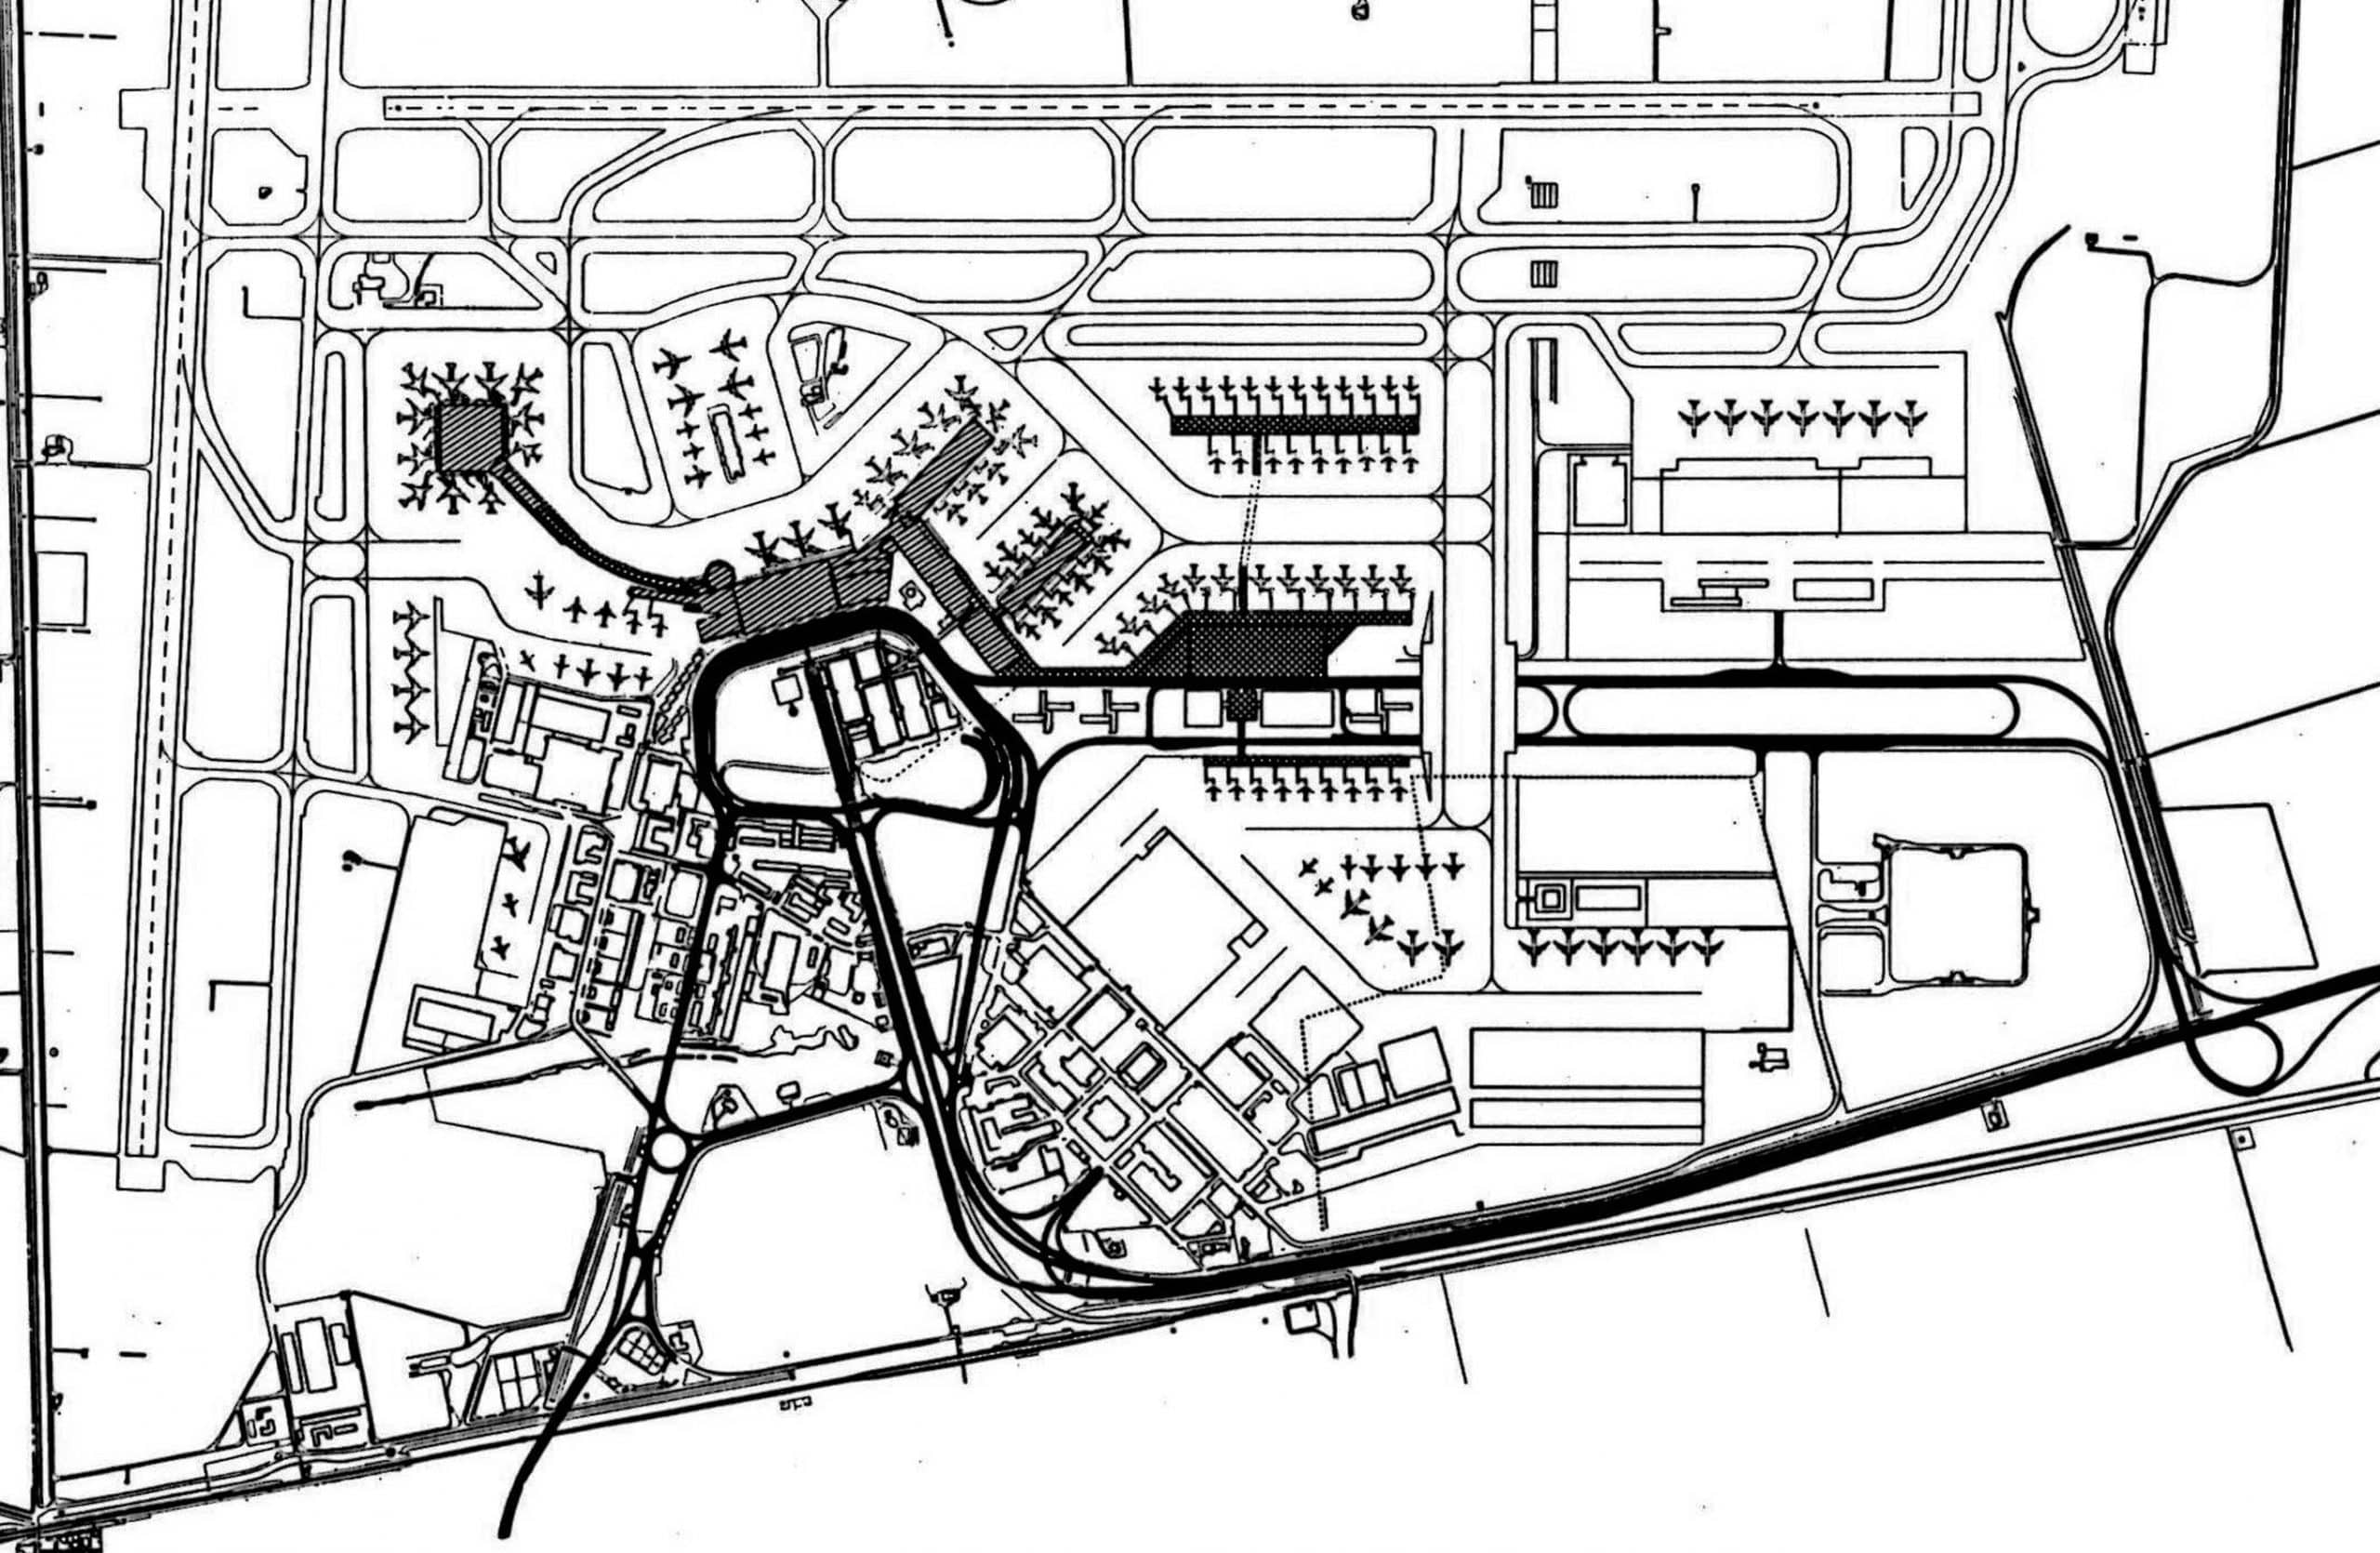 21 - Proposta per una nuova aerostazione Alitalia nell’area centrale e merci dell’Aeroporto “L. Da Vinci”, Fiumicino (RM) - Planimetria generale